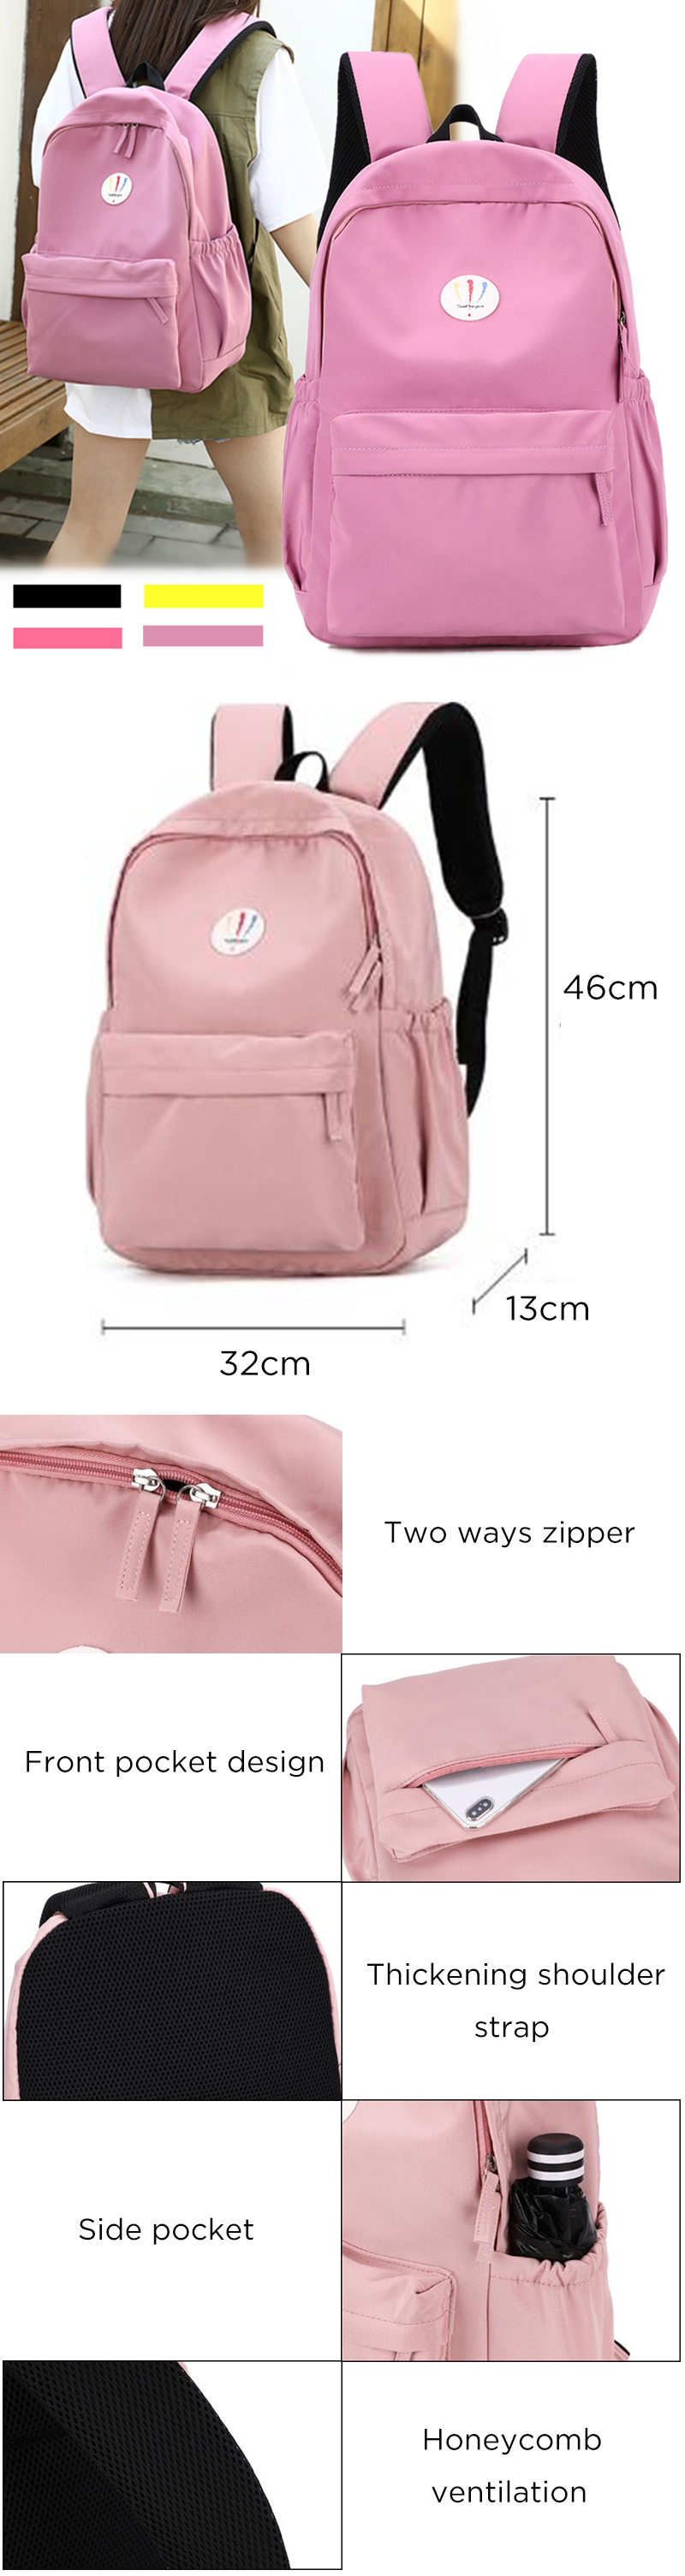 19L-Nylon-Backpack-Rucksack-14inch-Laptop-Student-School-Shoulder-Bag-Outdoor-Travel-1537290-1